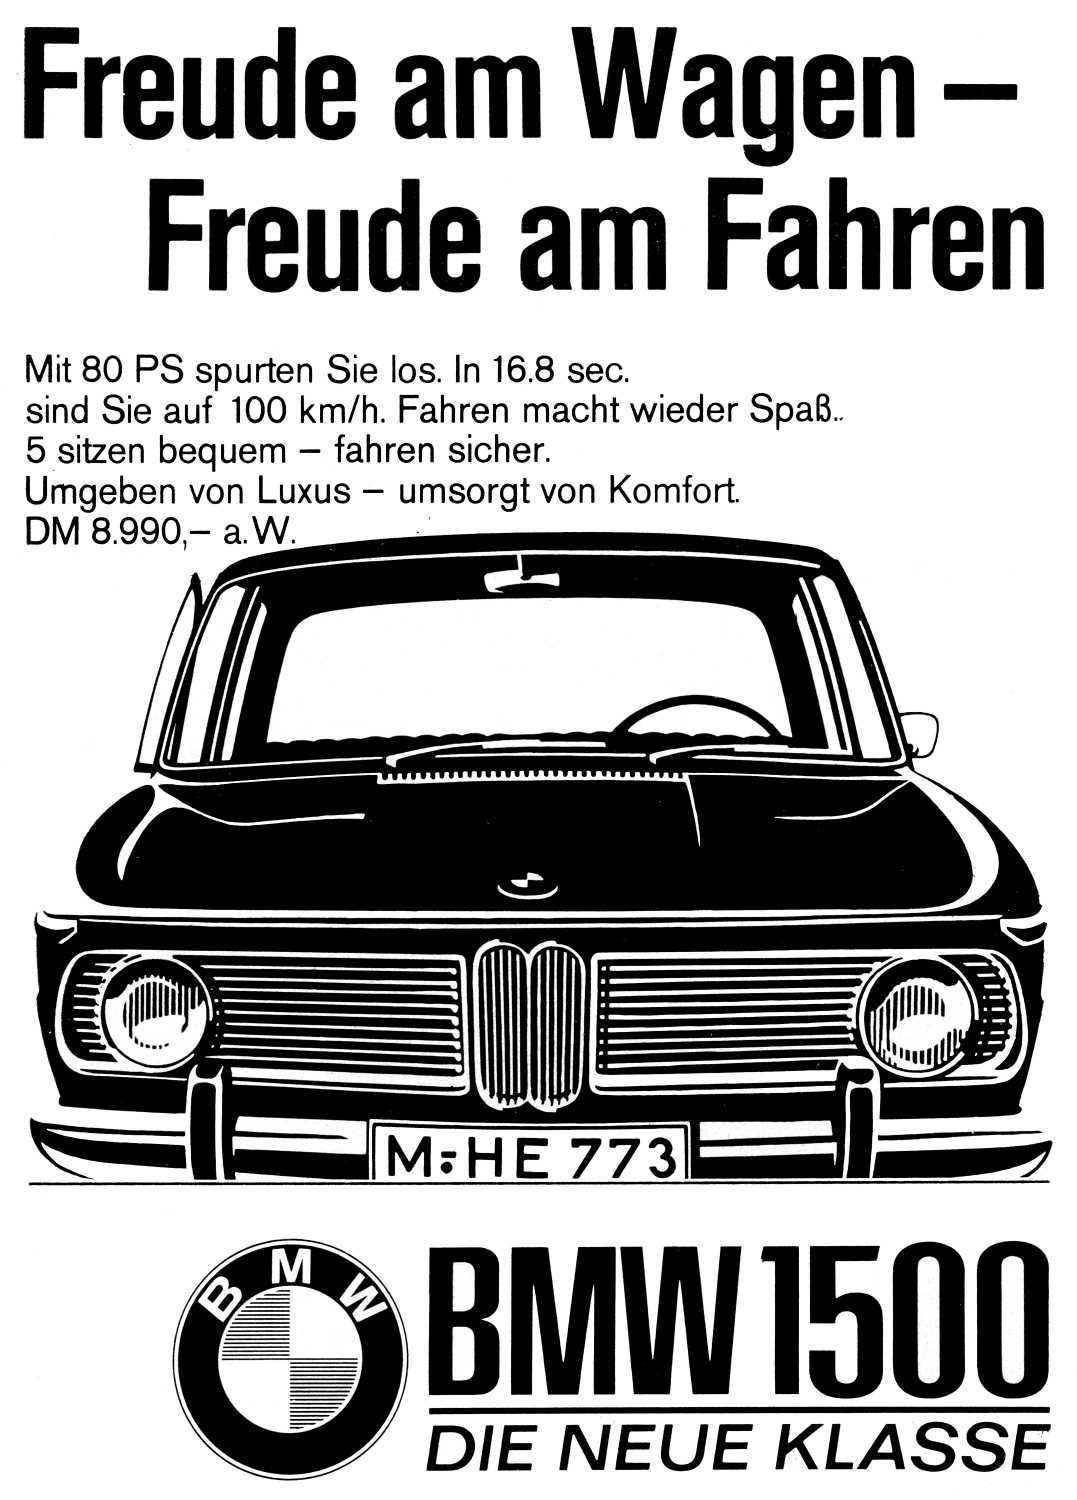 Advertisement block "Freude am Wagen - Freude am Fahren. BMW 1500"  (03/2020)